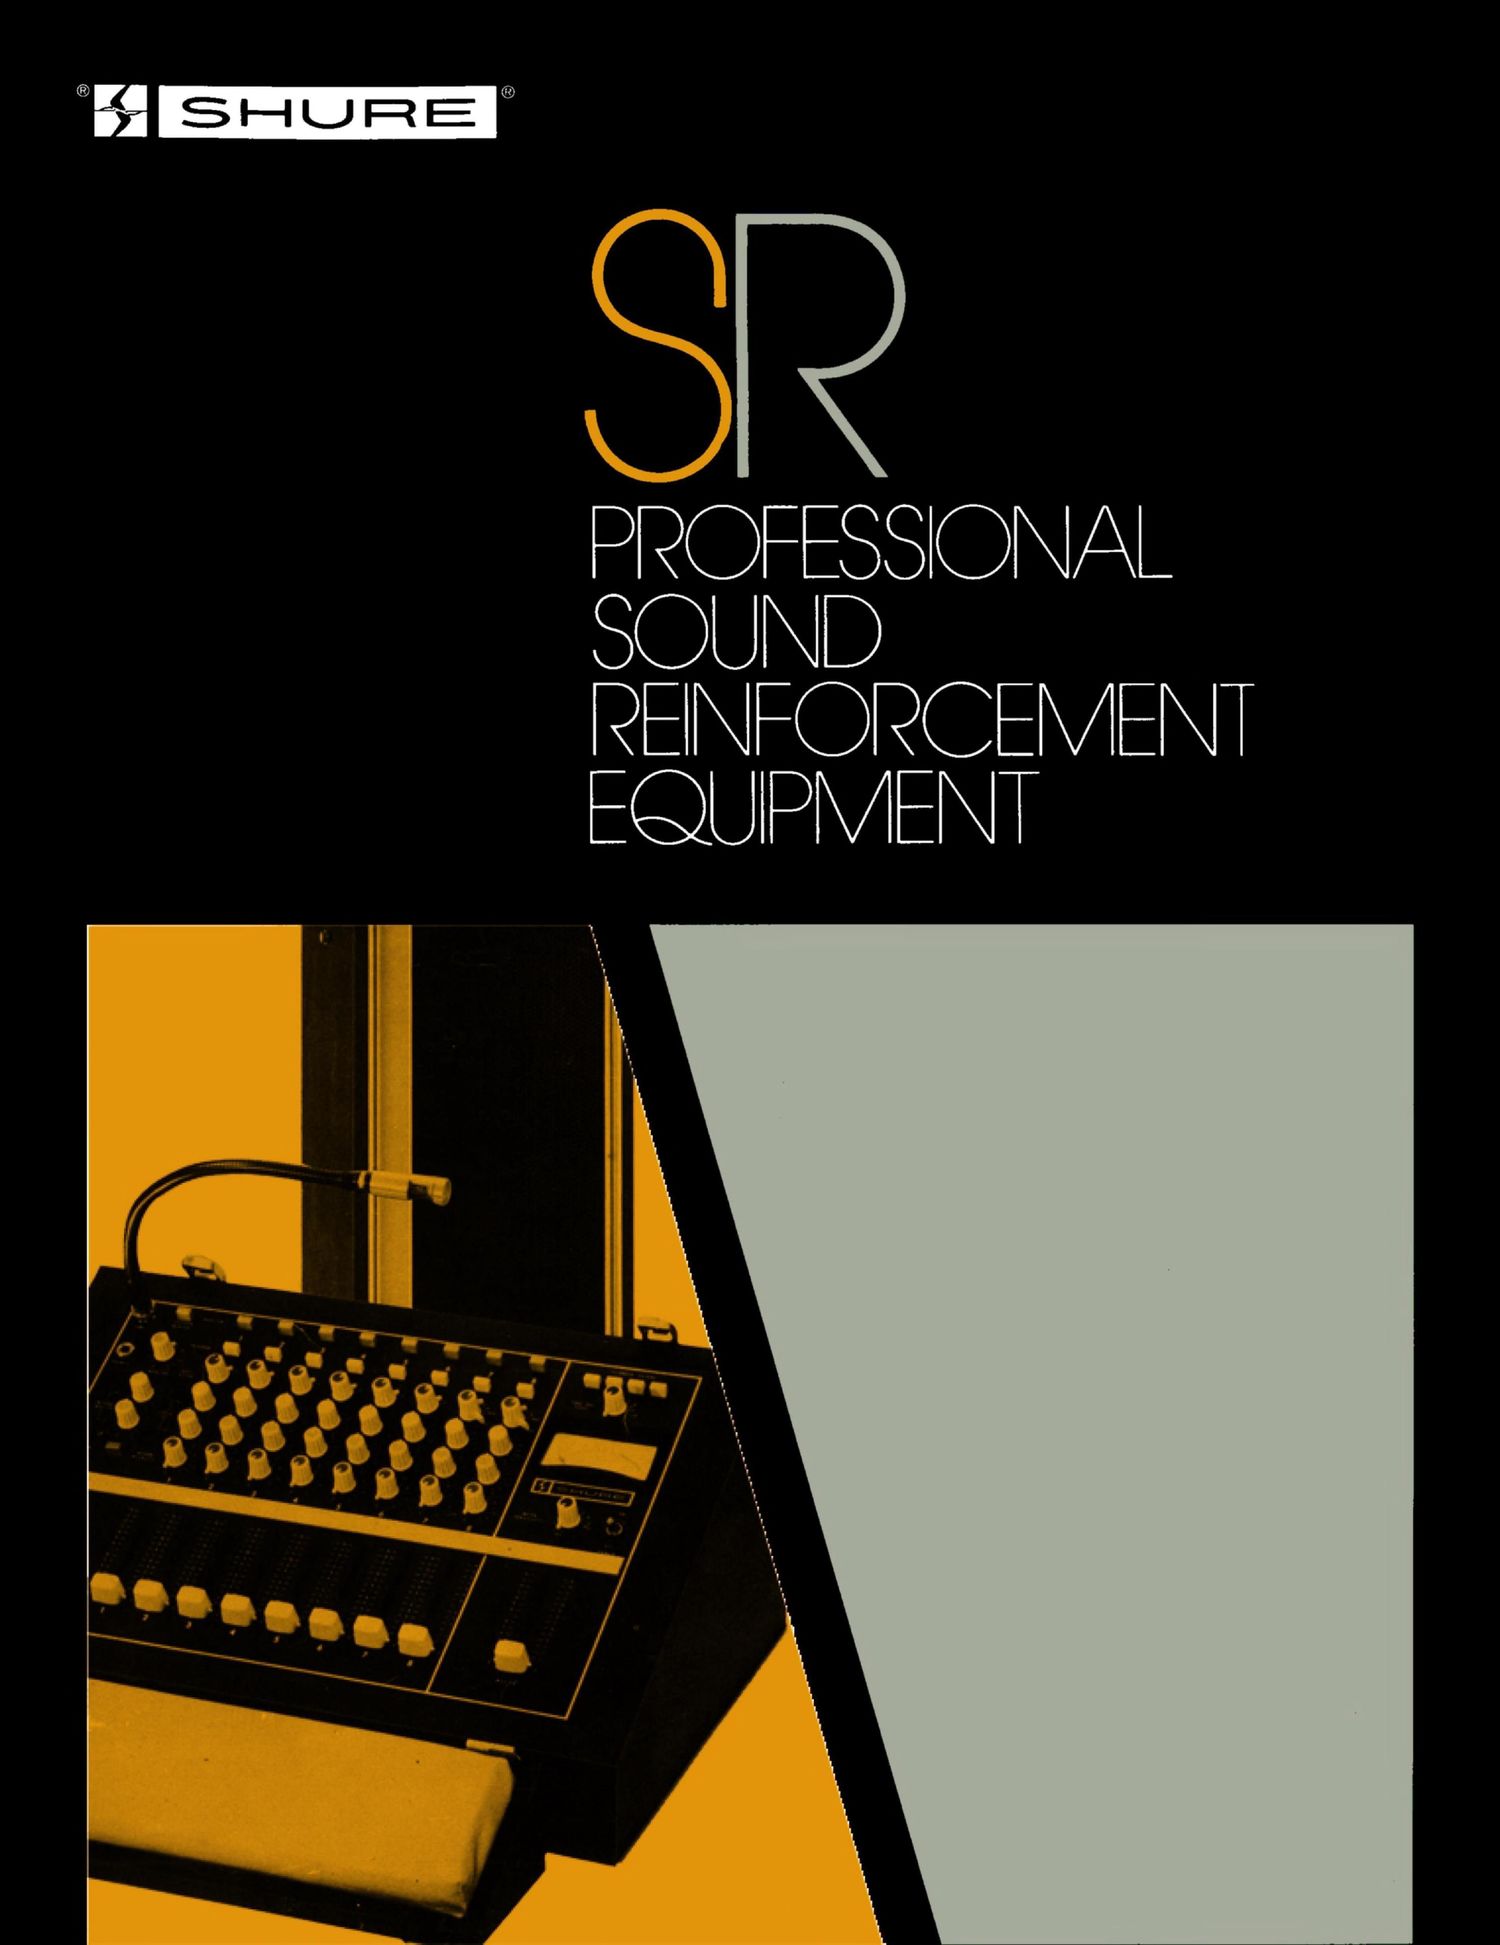 shure 1976 catalogue sr professional sound reinforcement